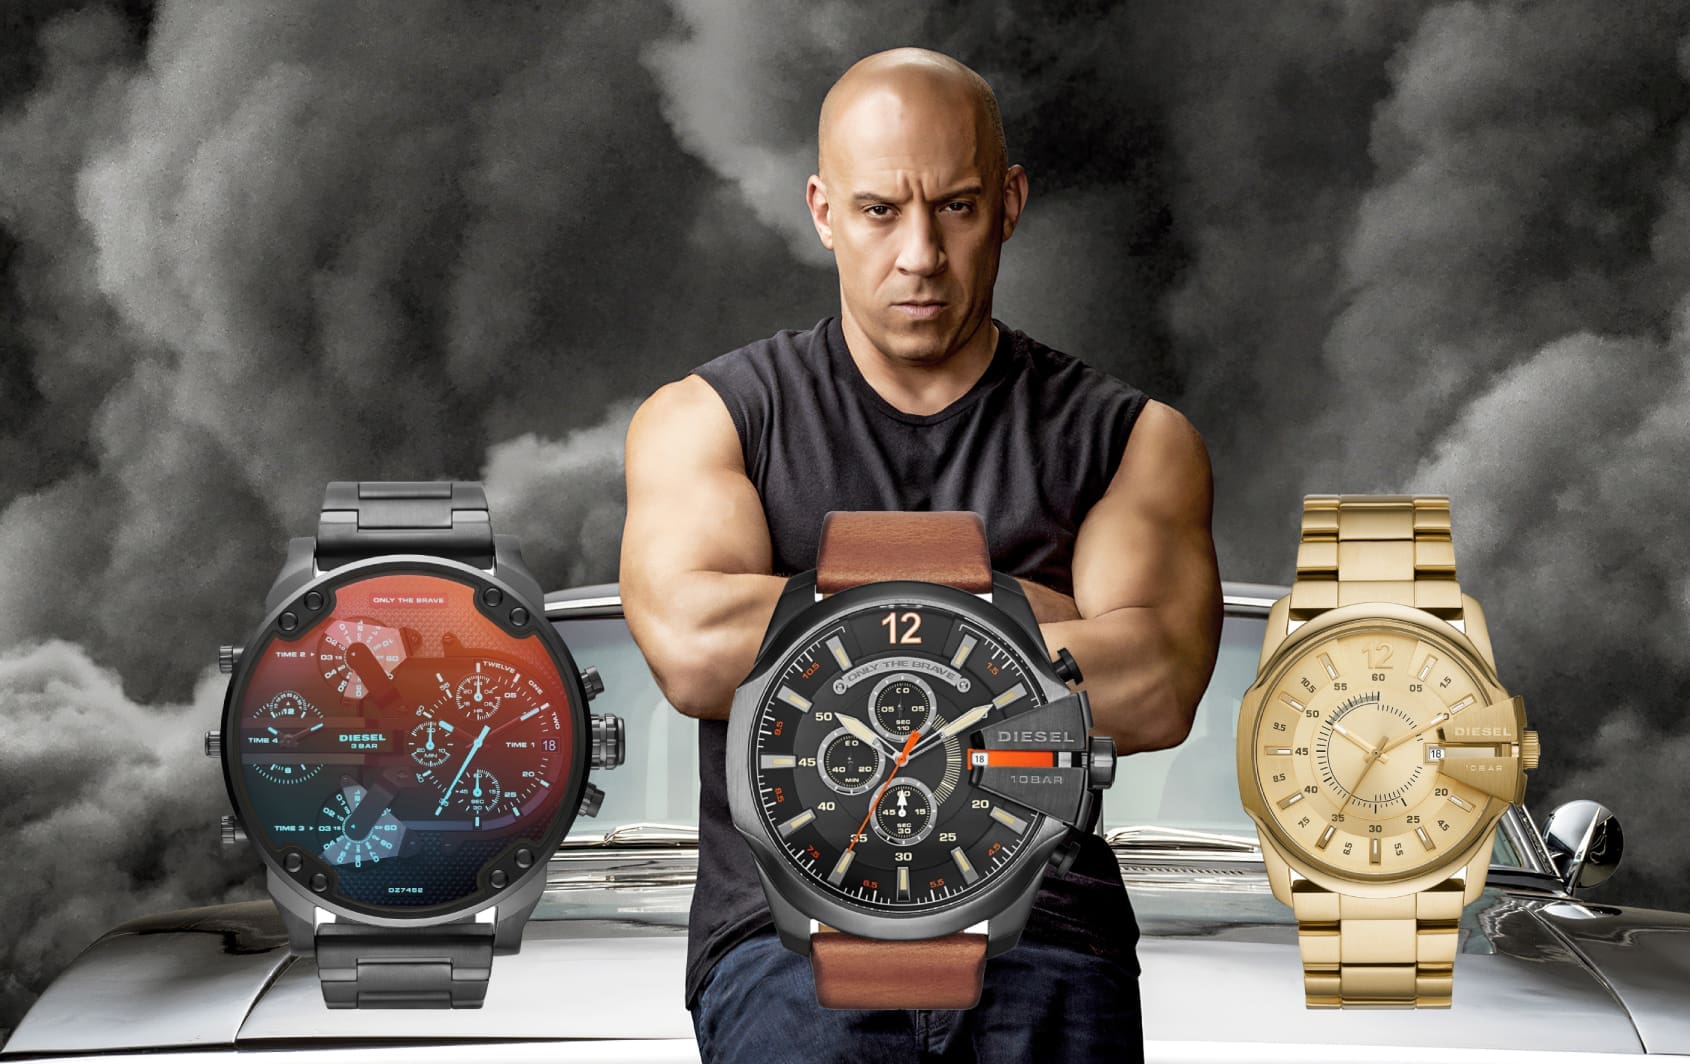 Diesel Watch, Men's Fashion, Watches & Accessories, Watches on Carousell-gemektower.com.vn